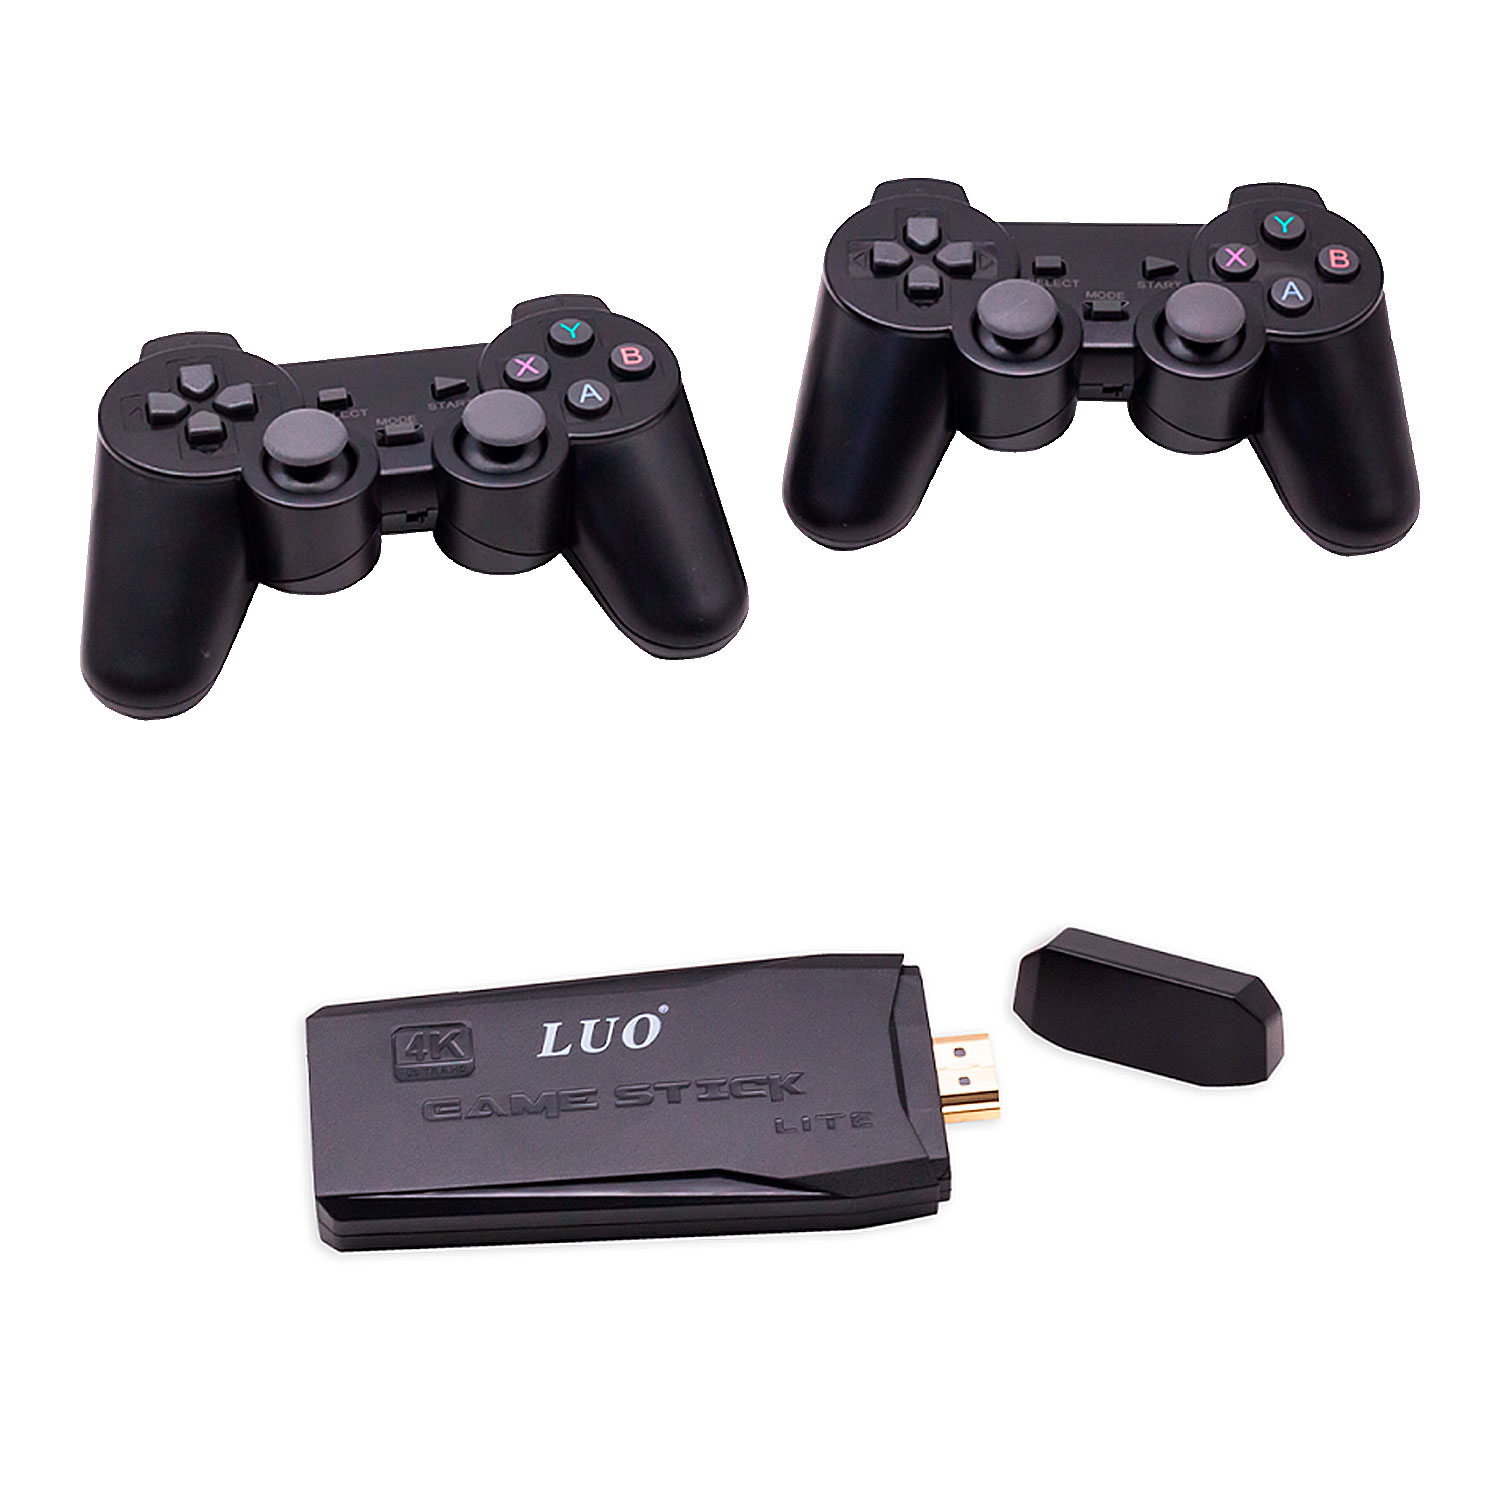 Console Luo Lite Game Stick 1000 Jogos 4K UHD 2 Controles Sem Fio - Preto (Sem Garantia)